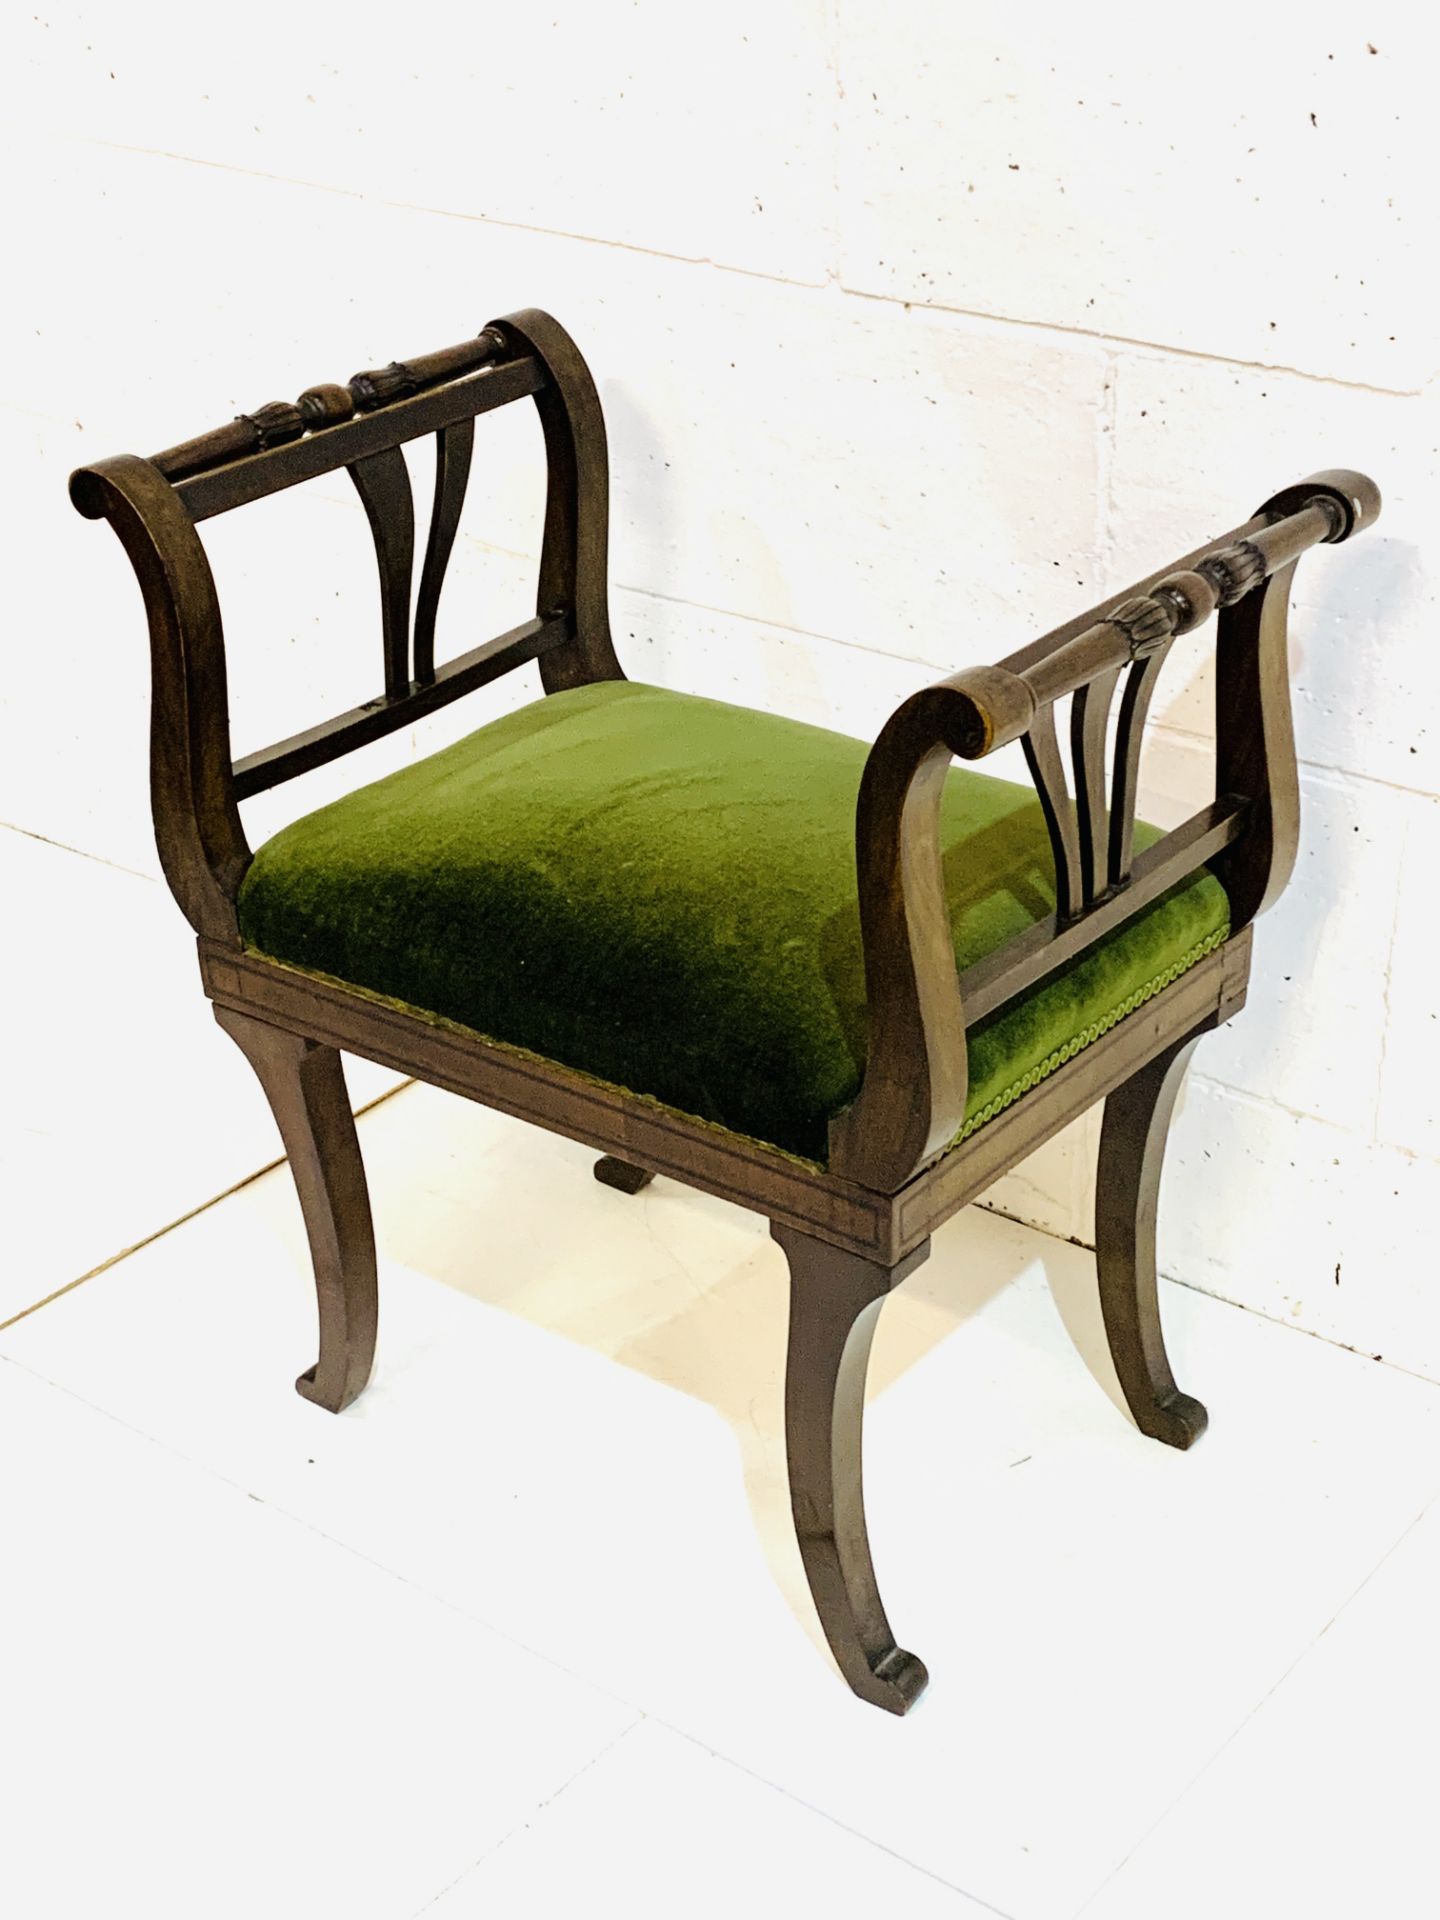 Mahogany Empire style stool with green velvet cushion.